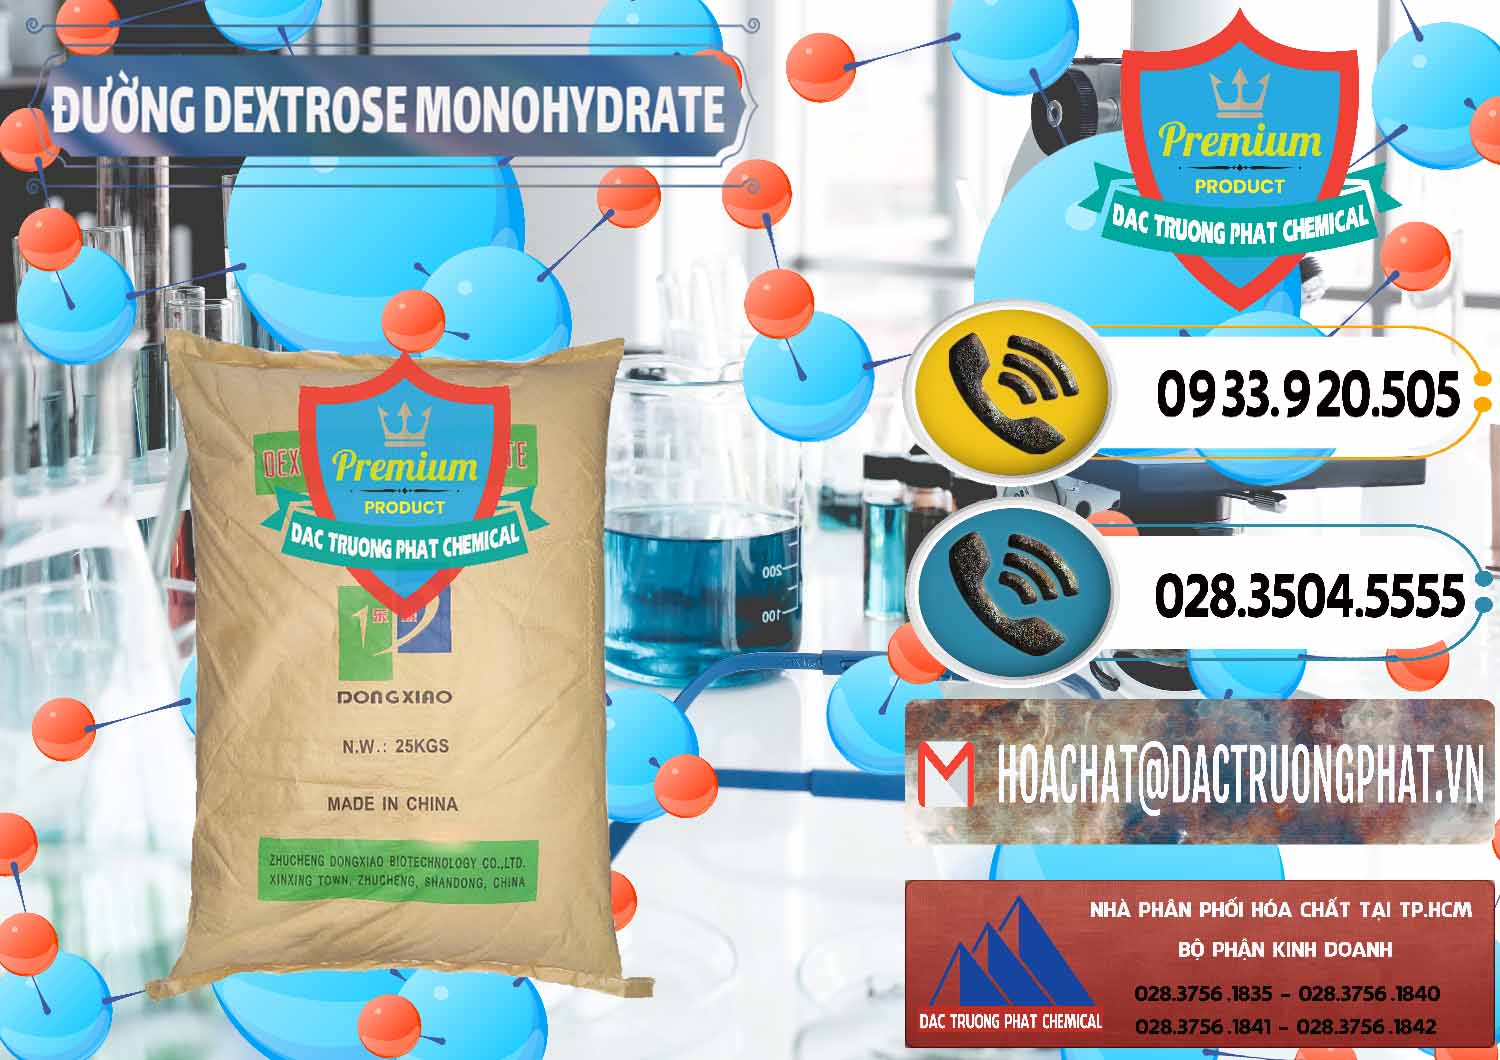 Đơn vị chuyên bán - cung ứng Đường Dextrose Monohydrate Food Grade Dongxiao Trung Quốc China - 0063 - Đơn vị nhập khẩu - phân phối hóa chất tại TP.HCM - hoachatdetnhuom.vn